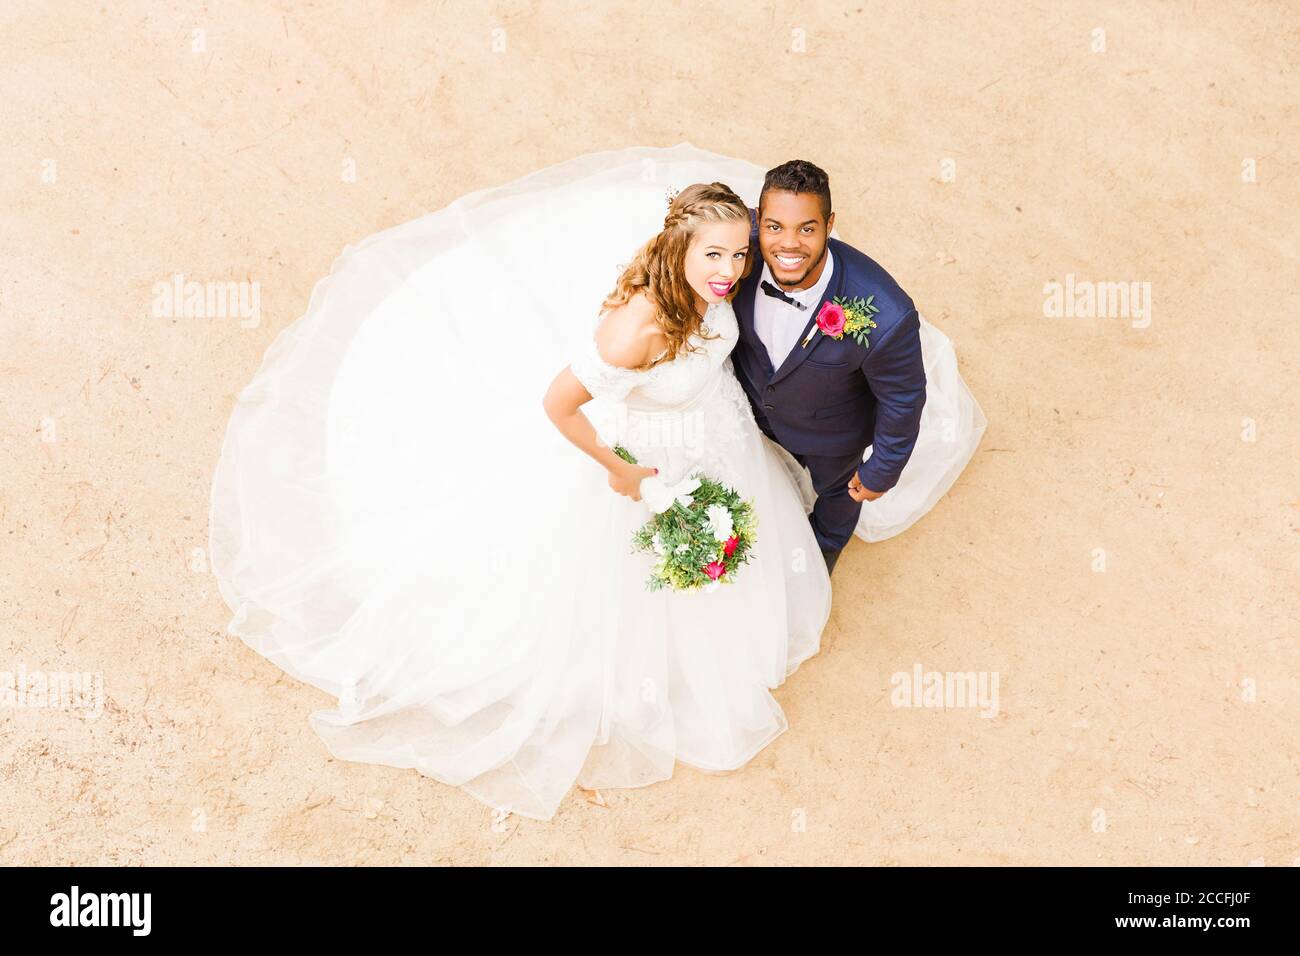 Matrimonio, sposi novelli, giovani adulti, diversità, amore, sabbia, vista dall'alto Foto Stock